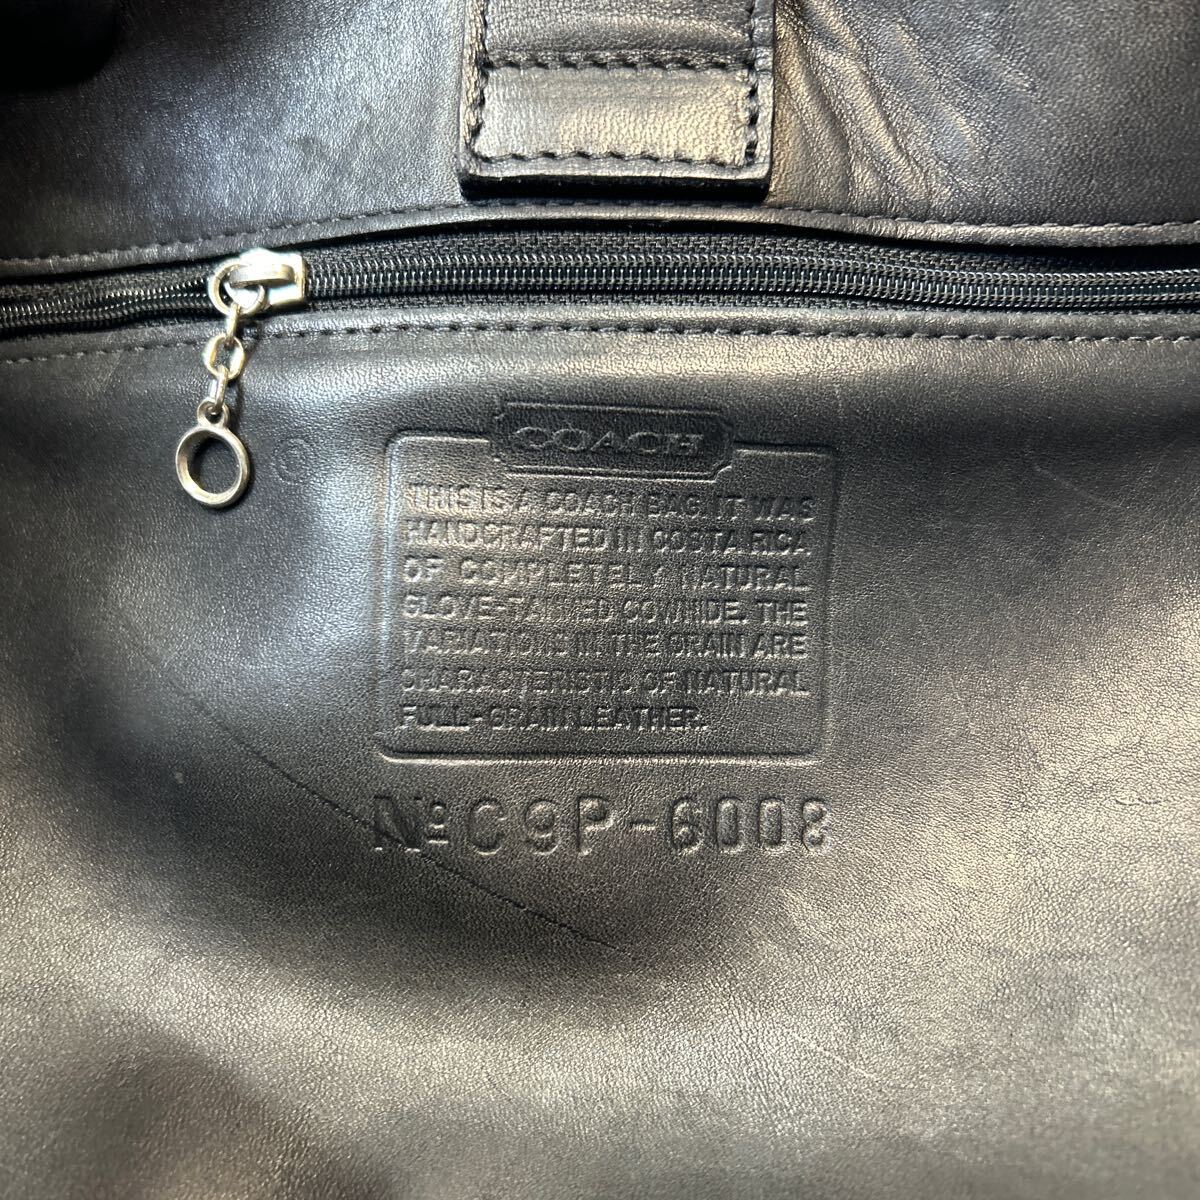 COACH Coach USA Old Coach Vintage shoulder bag all leather shoulder .. original leather black group tote bag ( control NO:01)